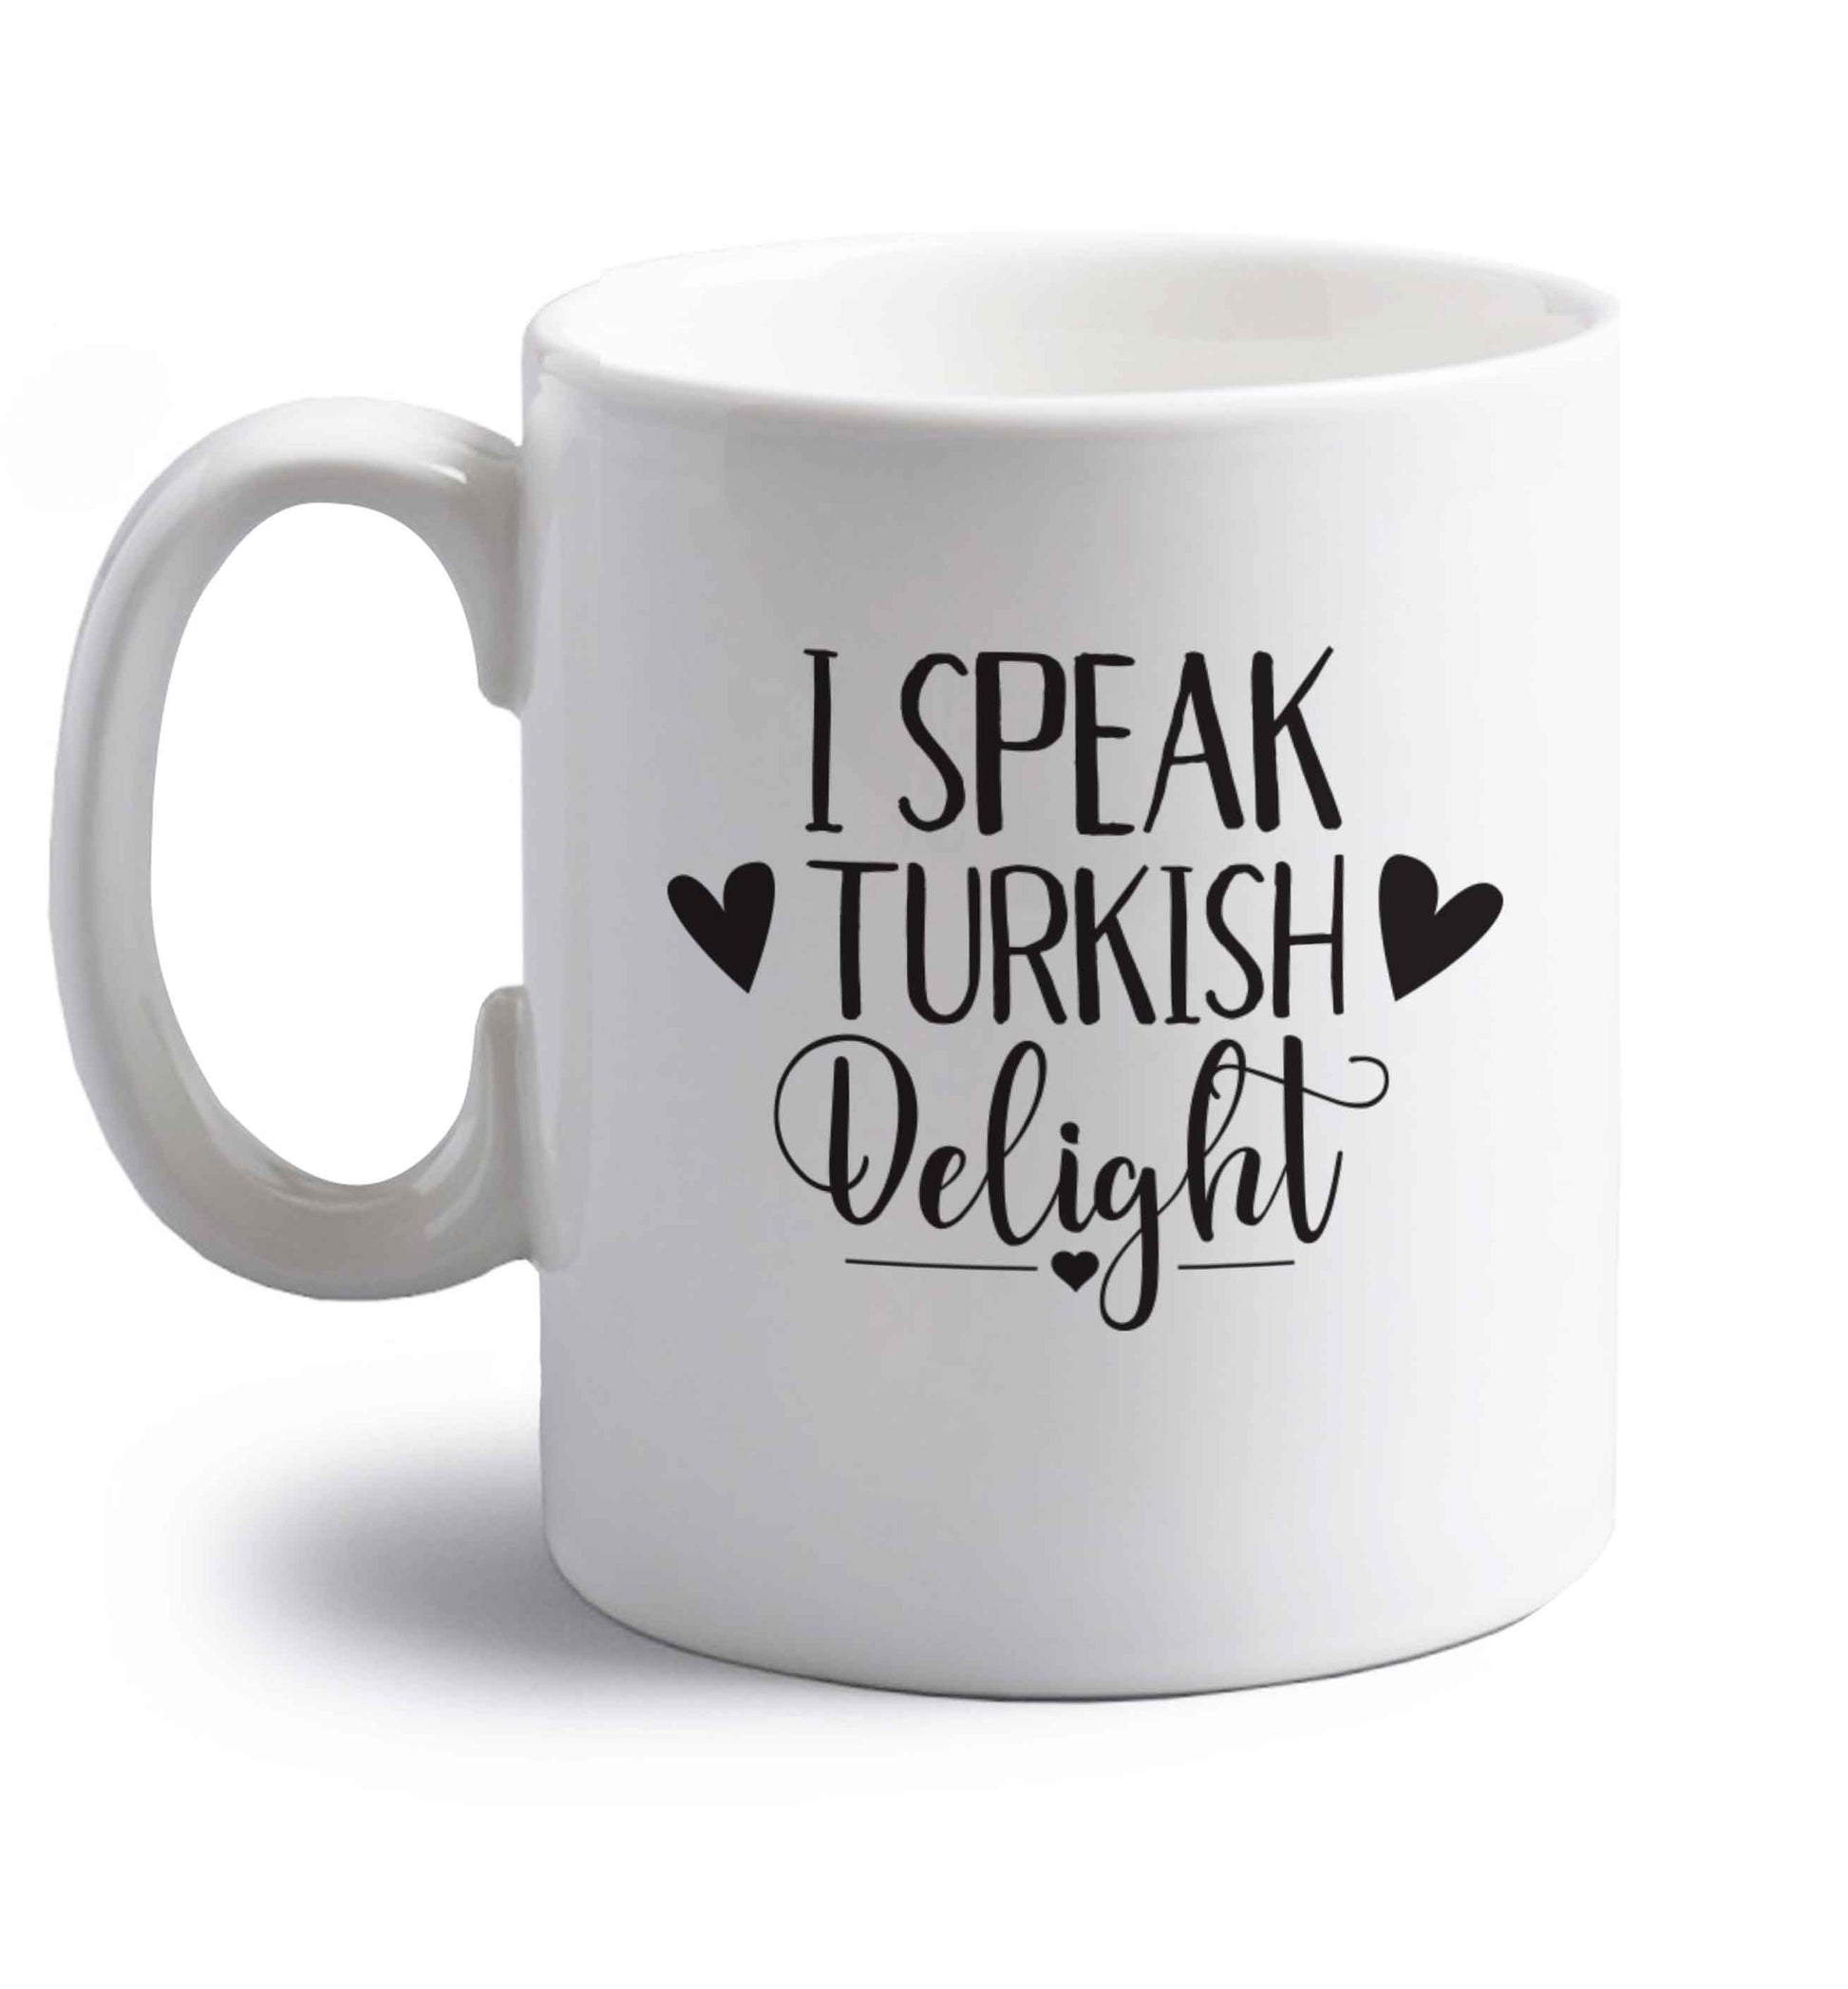 I speak turkish...delight right handed white ceramic mug 